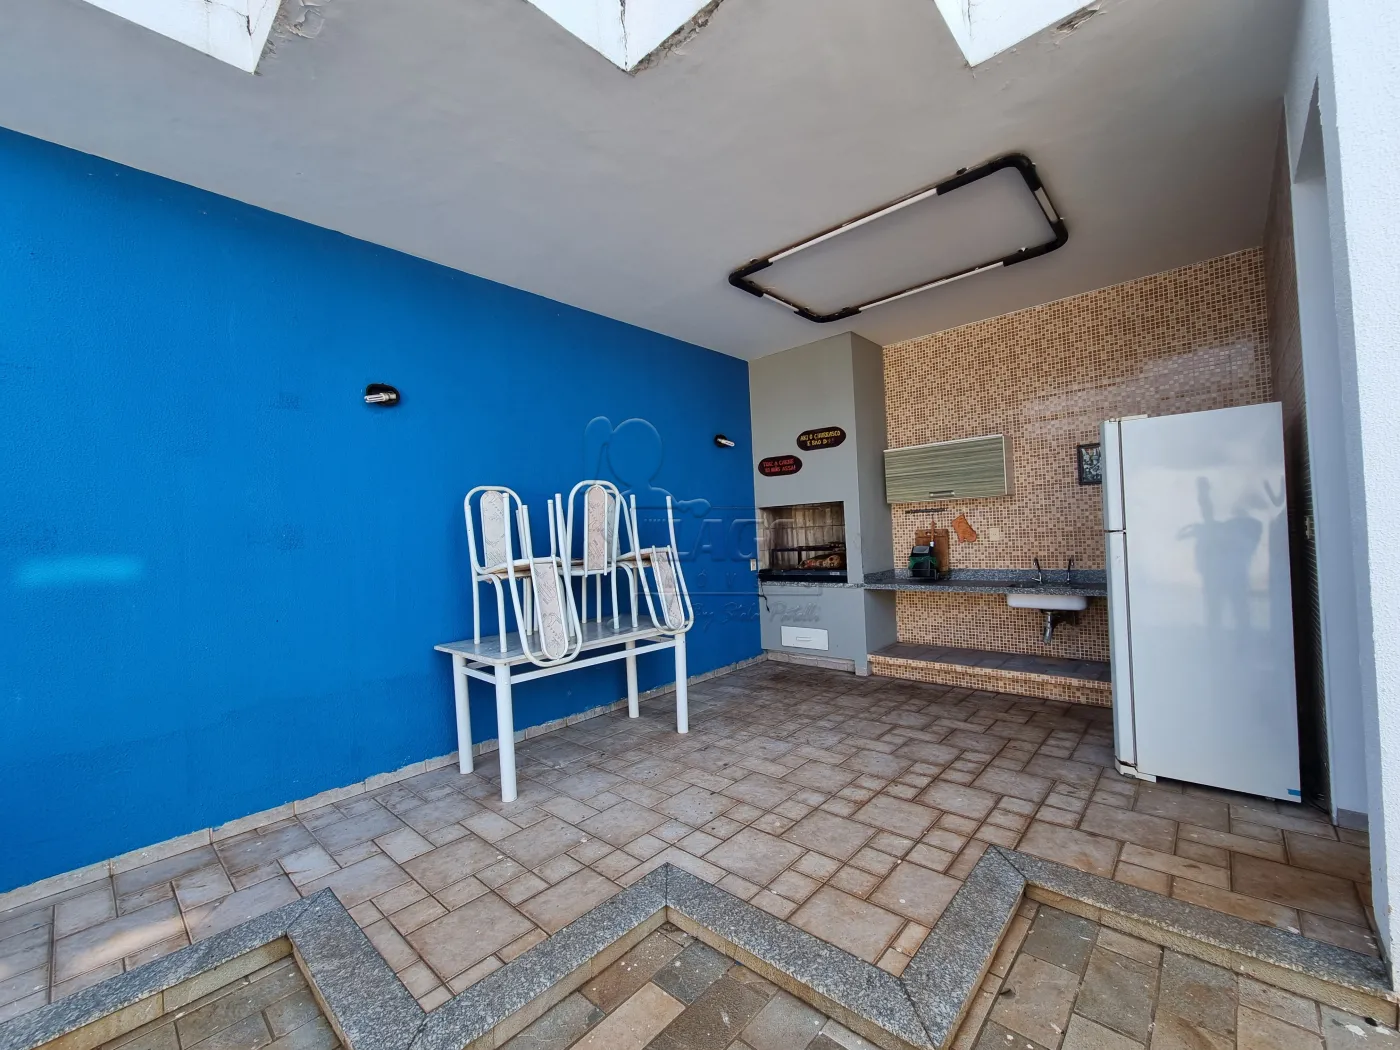 Alugar Casa / Padrão em Ribeirão Preto R$ 12.000,00 - Foto 7